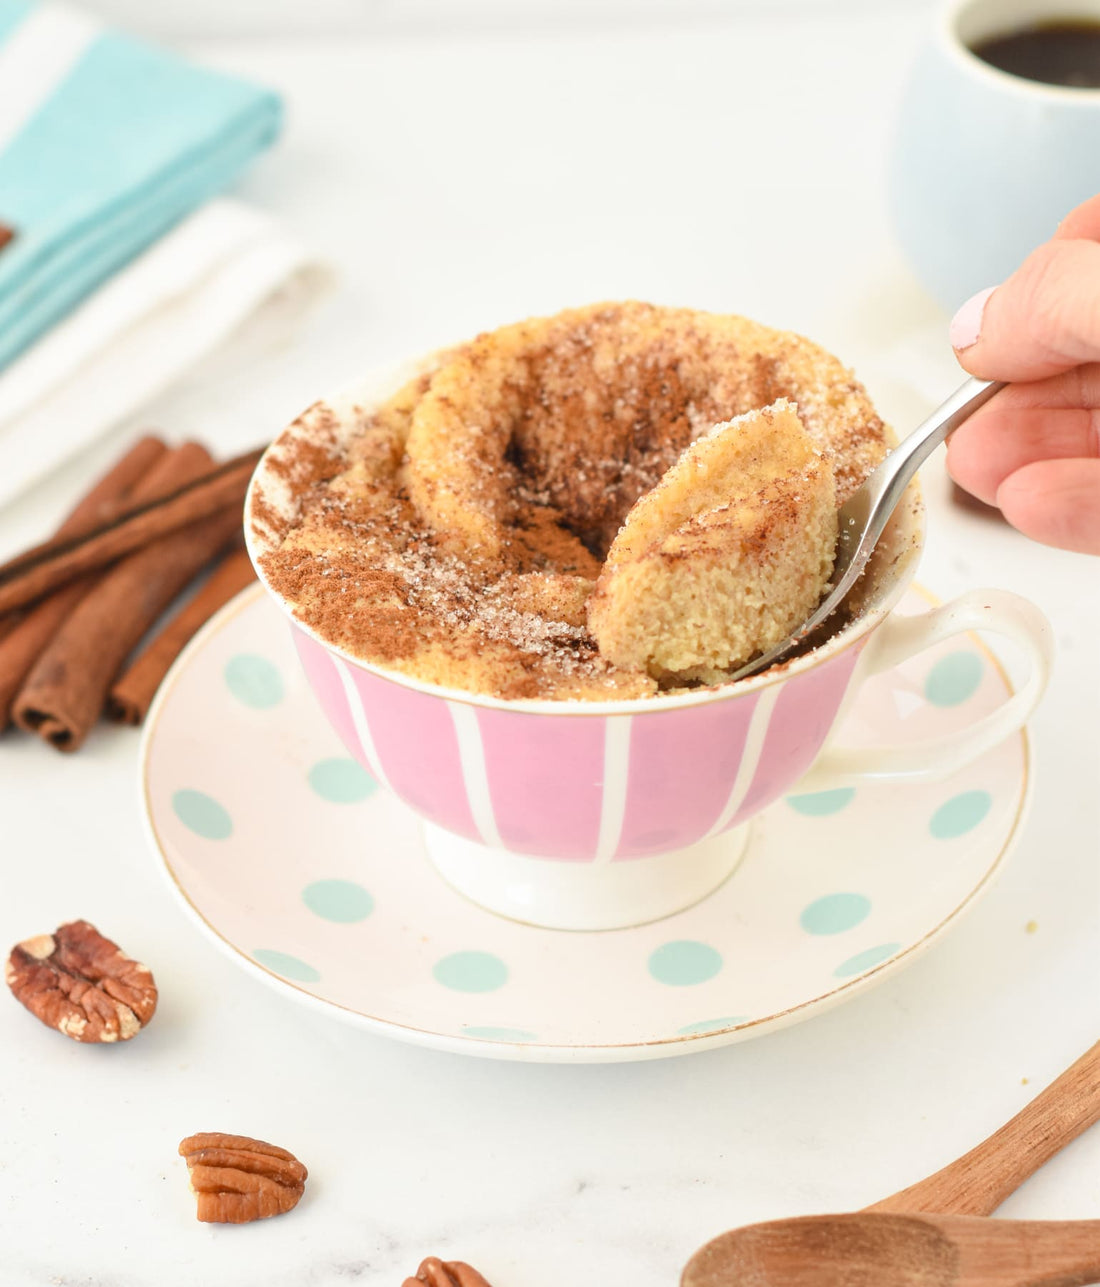 Protein Mug Cakes 101: The Macro-Friendly Sweet Treat That Takes Less Than 2 Minutes!